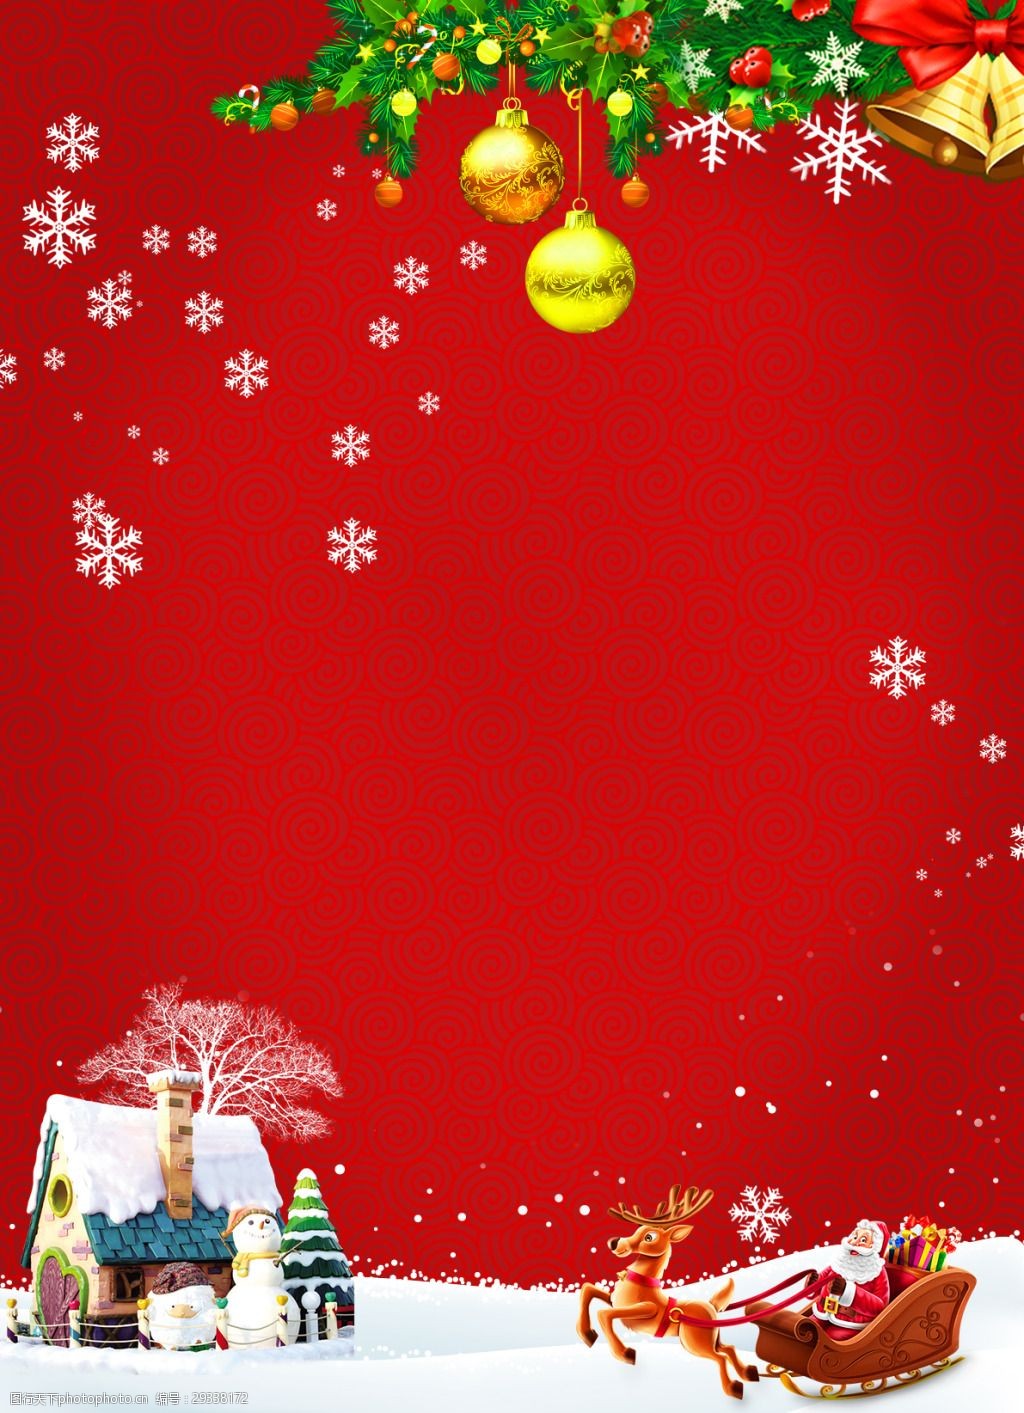 关键词:红色喜庆圣诞背景 彩球 村庄 红色 铃铛 麋鹿 圣诞 圣诞节